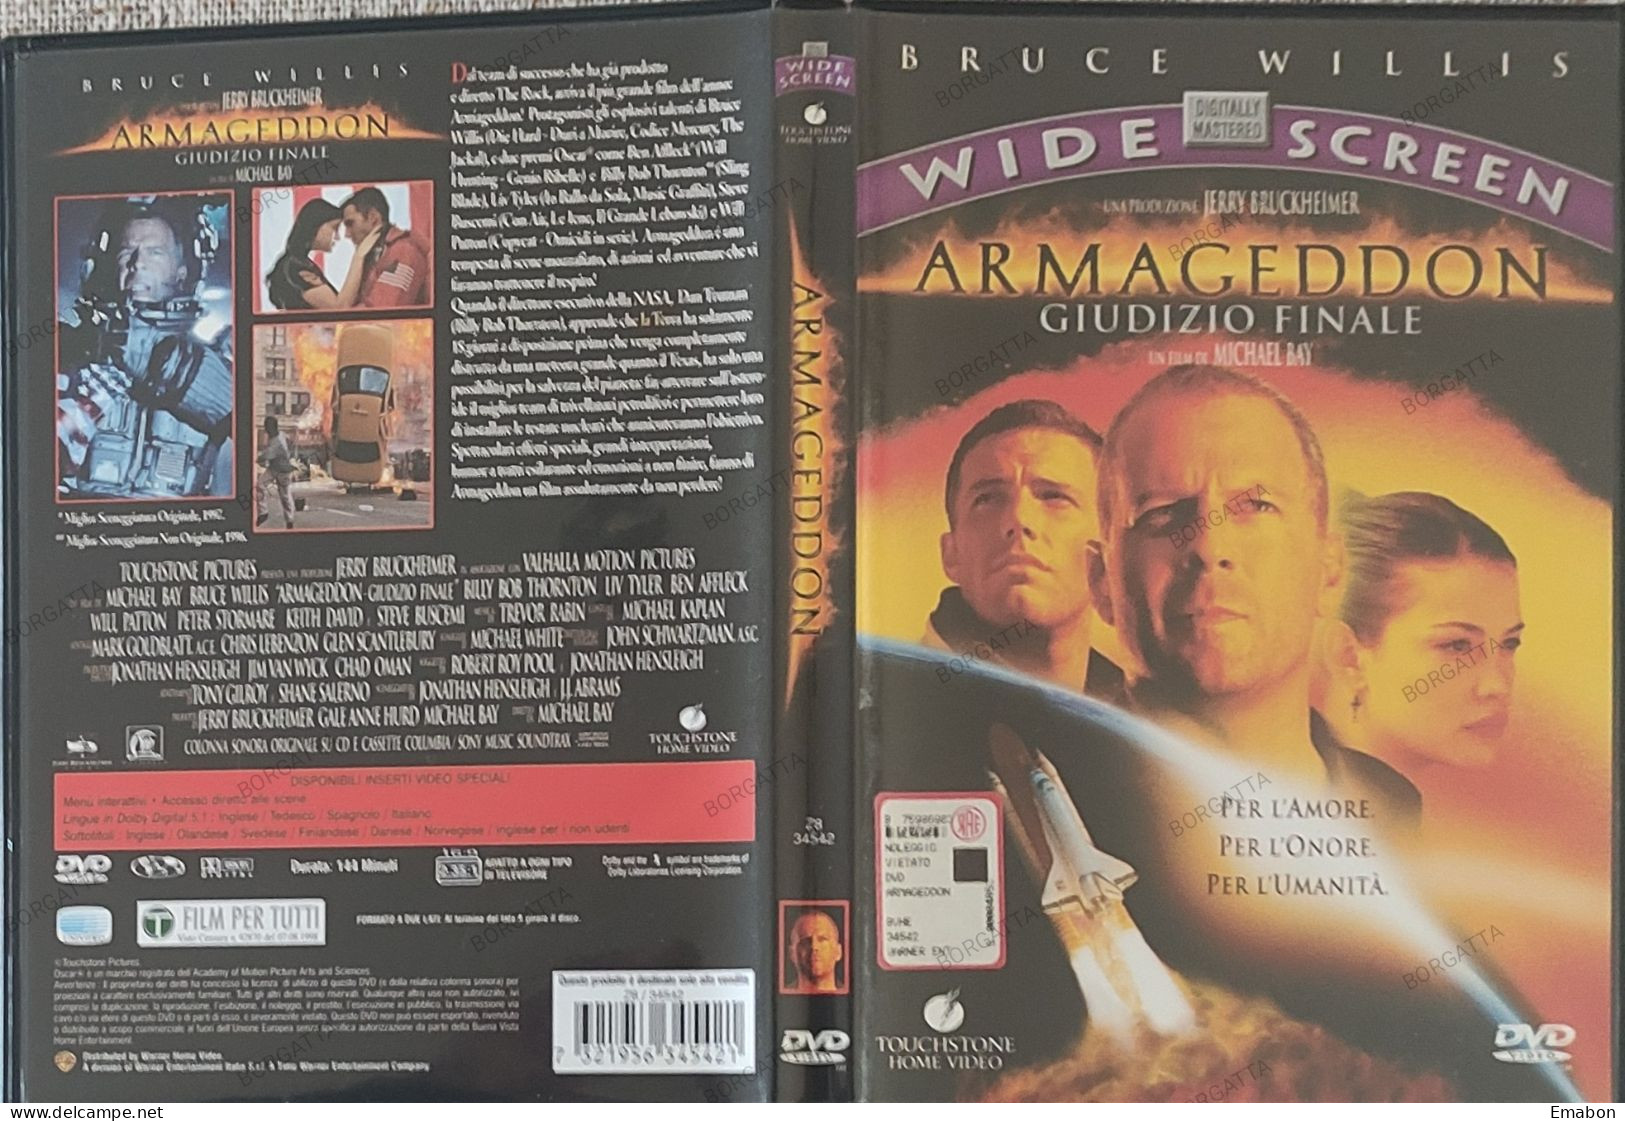 BORGATTA - FANTASCIENZA - Dvd ARMAGEDDON GIUDIZION FINALE - BRUCE WILLIS  - PAL 2 - WARNER 1998 - USATO In Buono Stato - Sci-Fi, Fantasy